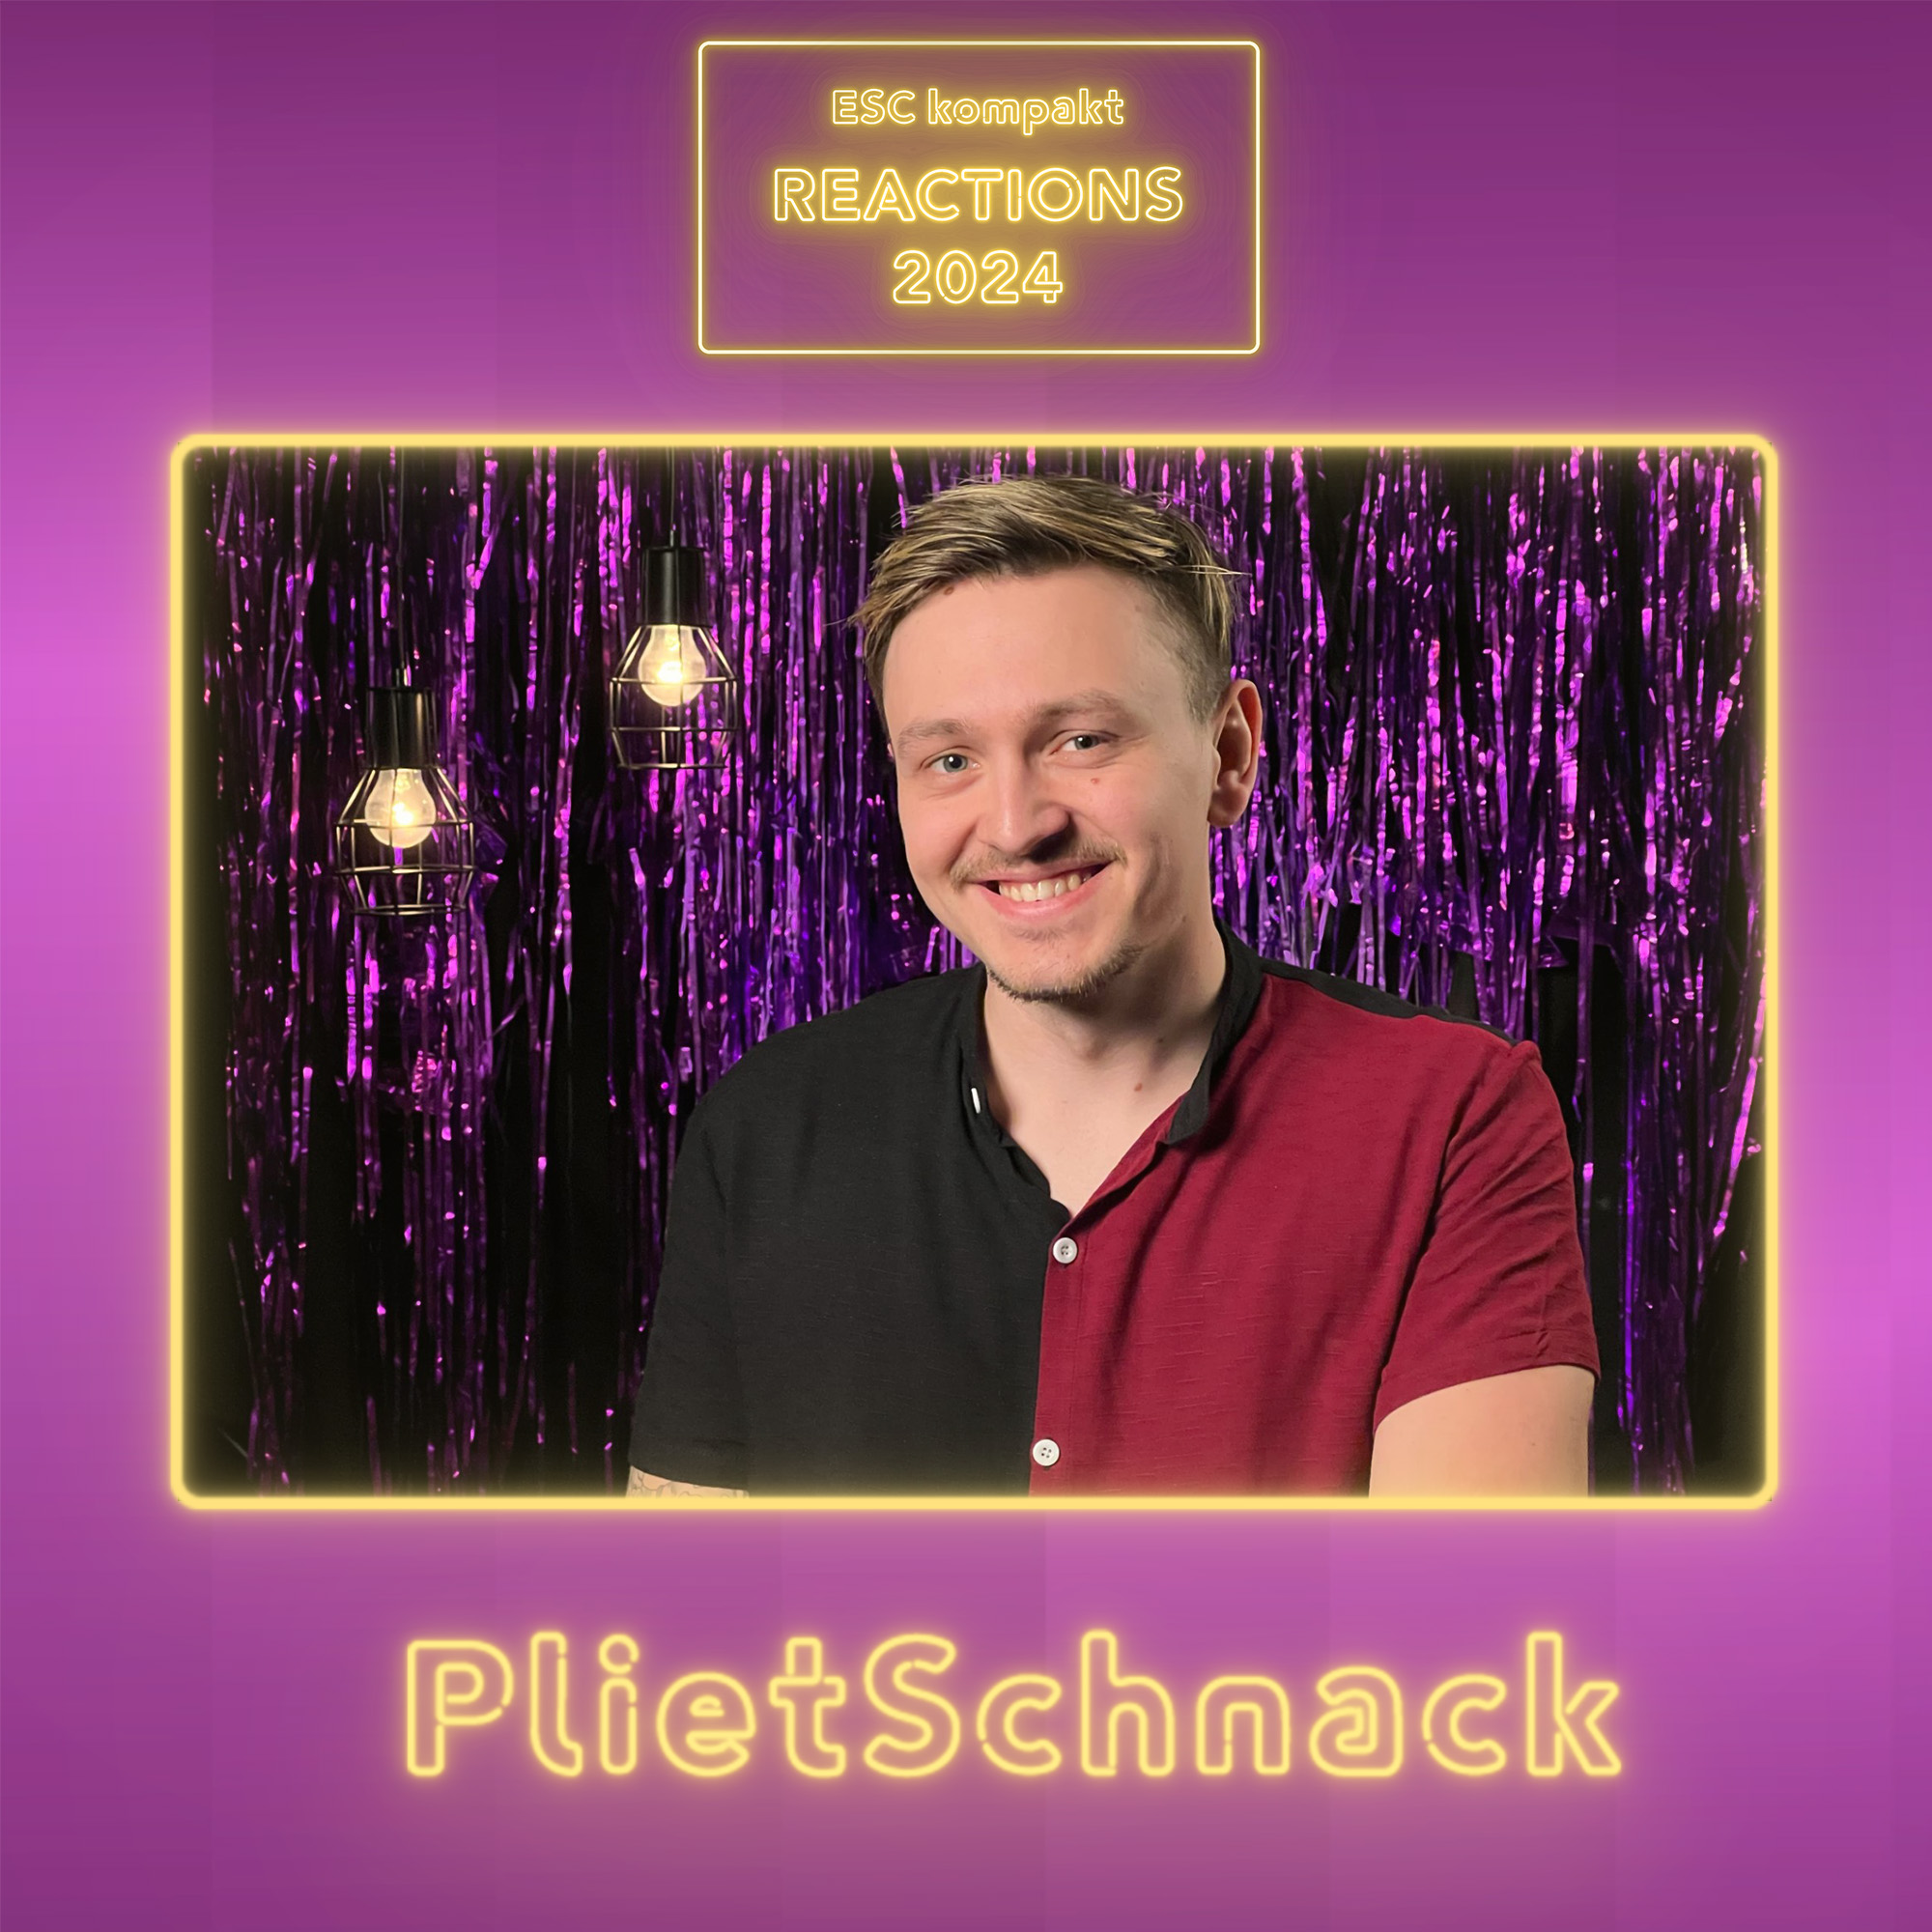 PlietSchnack